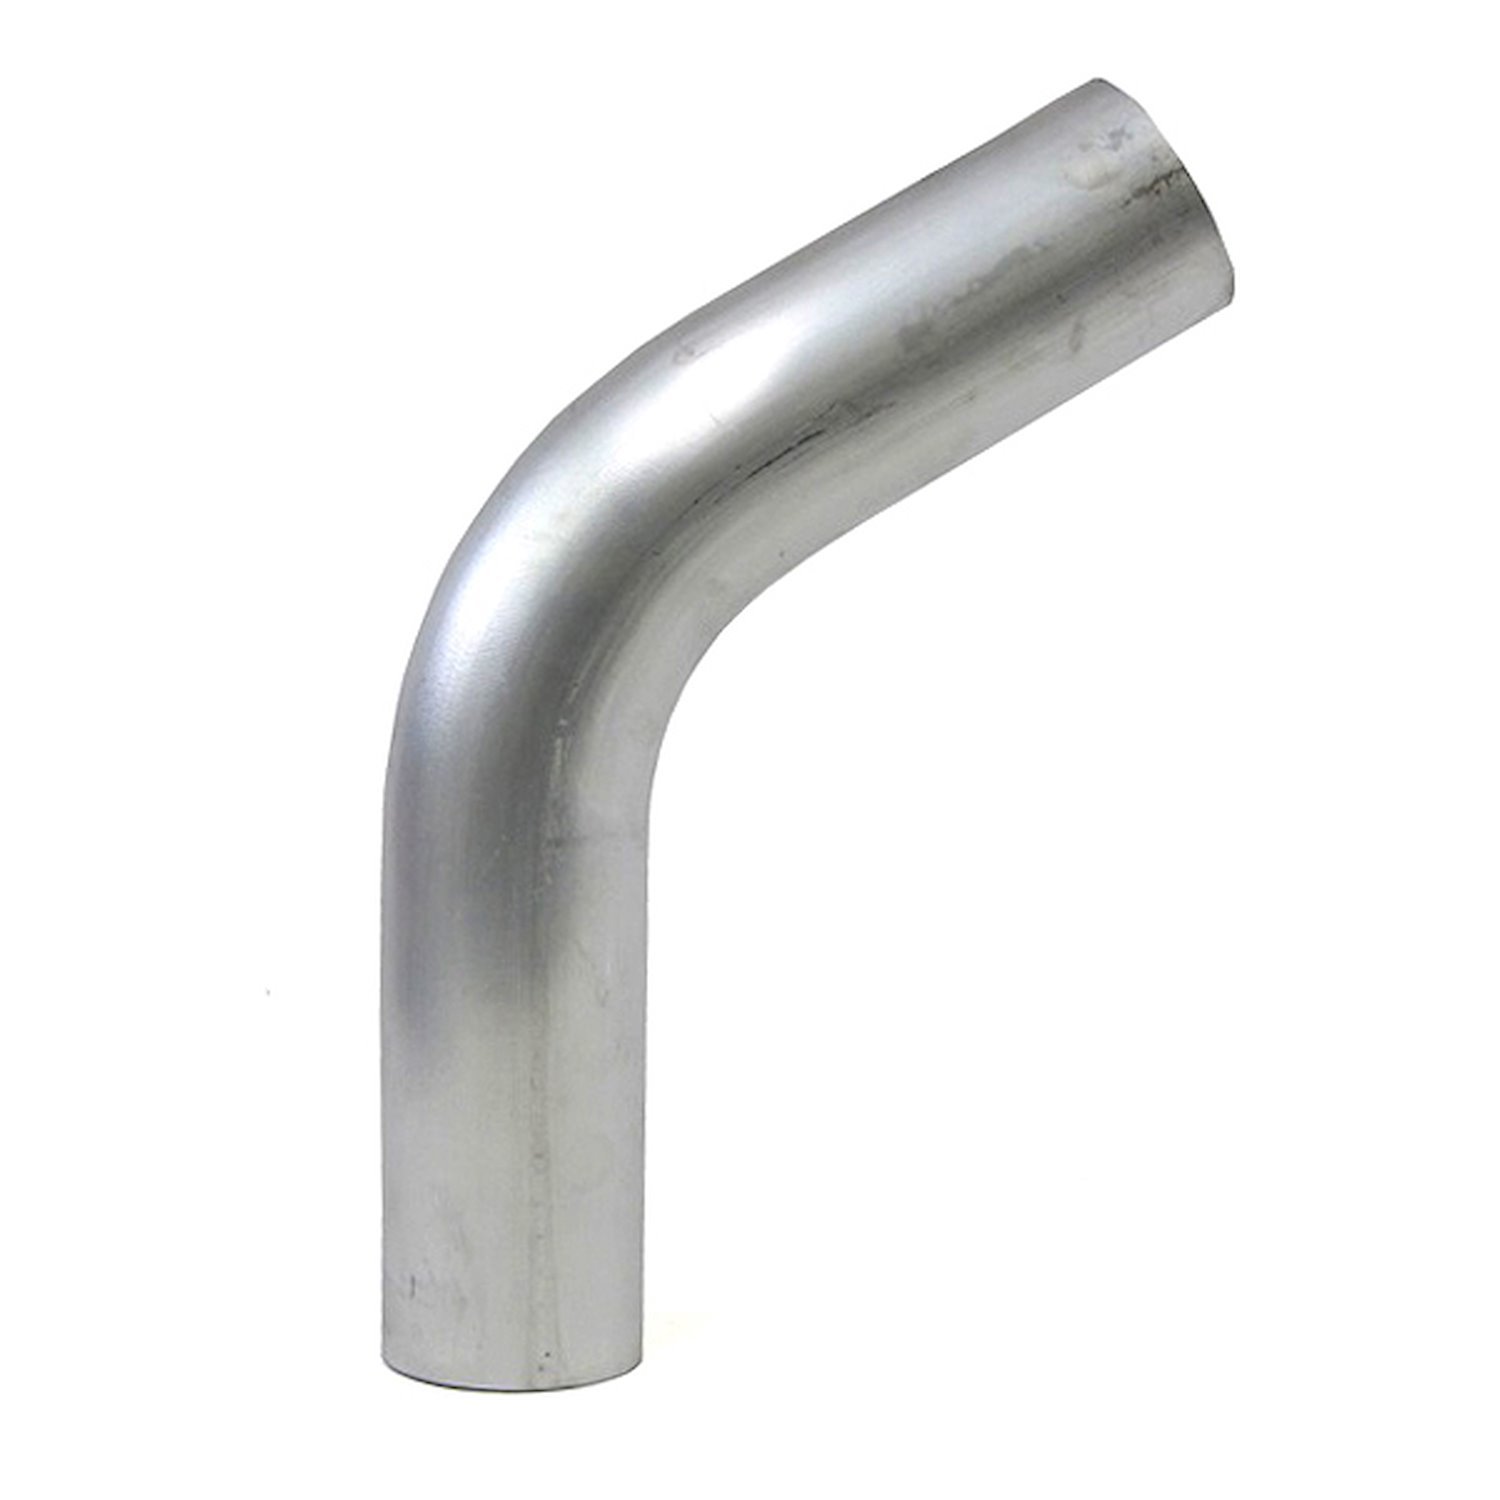 AT60-450-CLR-6 Aluminum Elbow Tube, 6061 Aluminum, 60-Degree Bend Elbow Tubing, 4-1/2 in. OD, Large Radius, 6 in. CLR